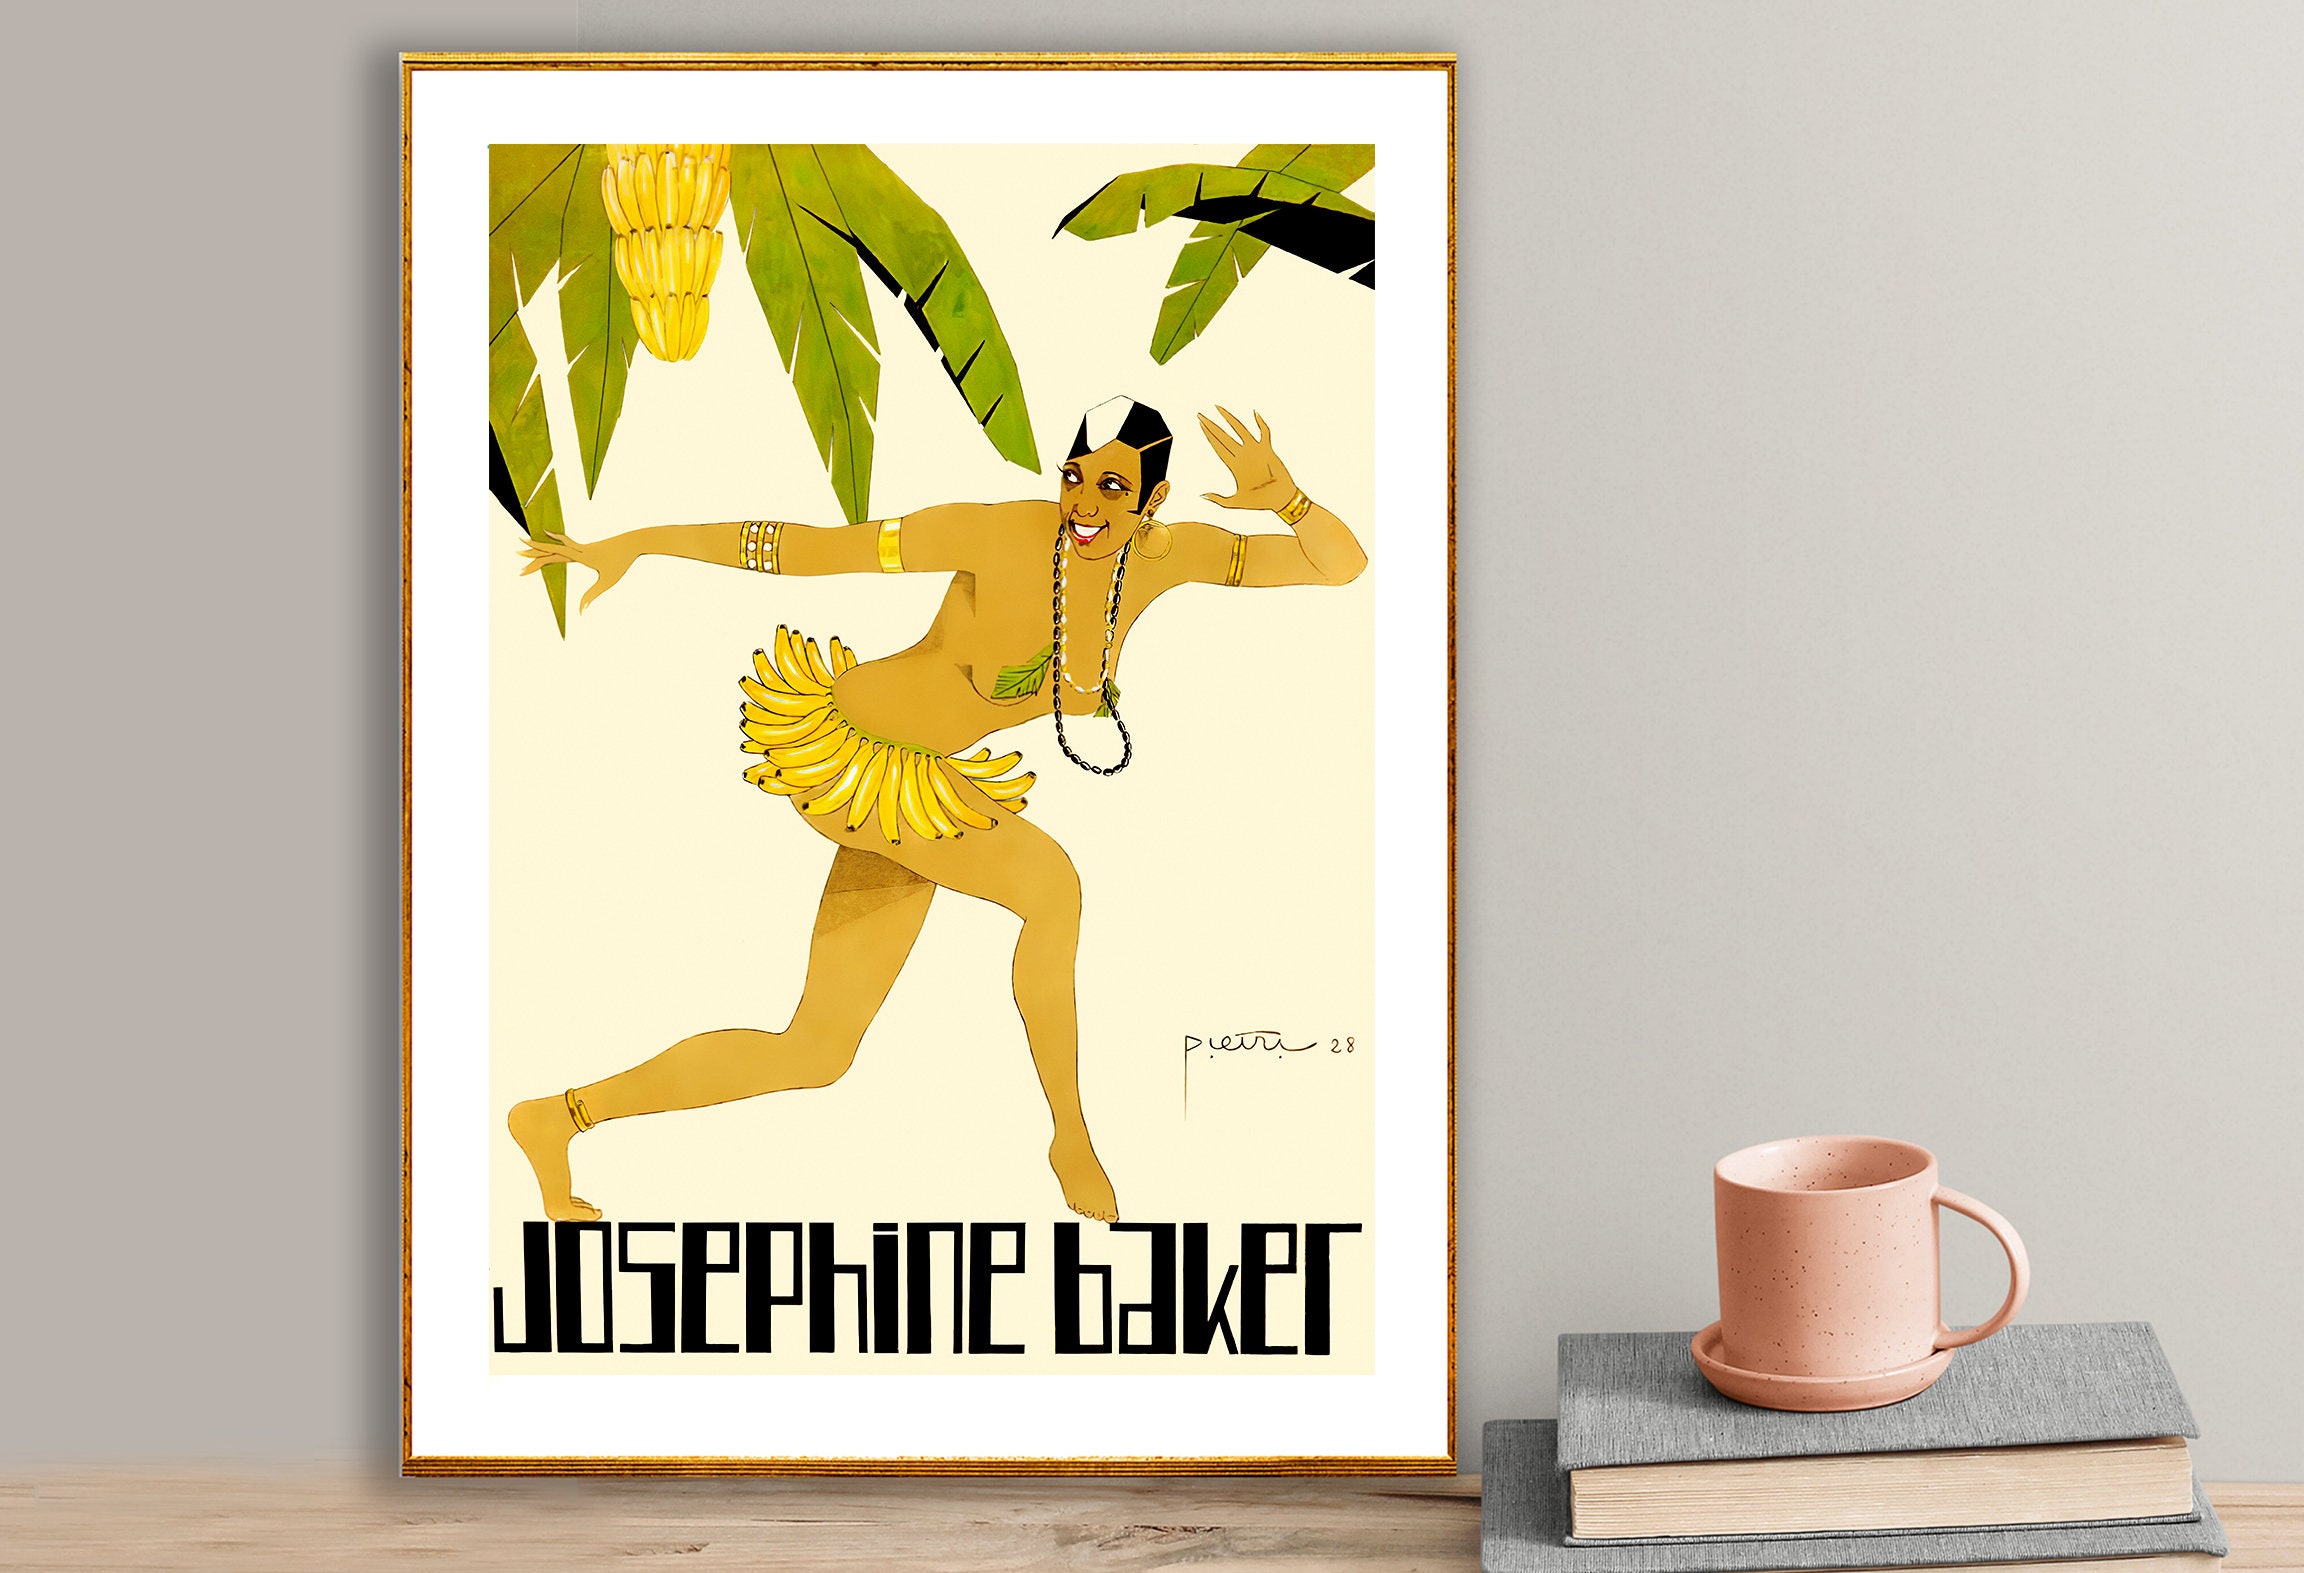 Josephine Baker Banana Skirt Vintage Celebrity Poster Poster